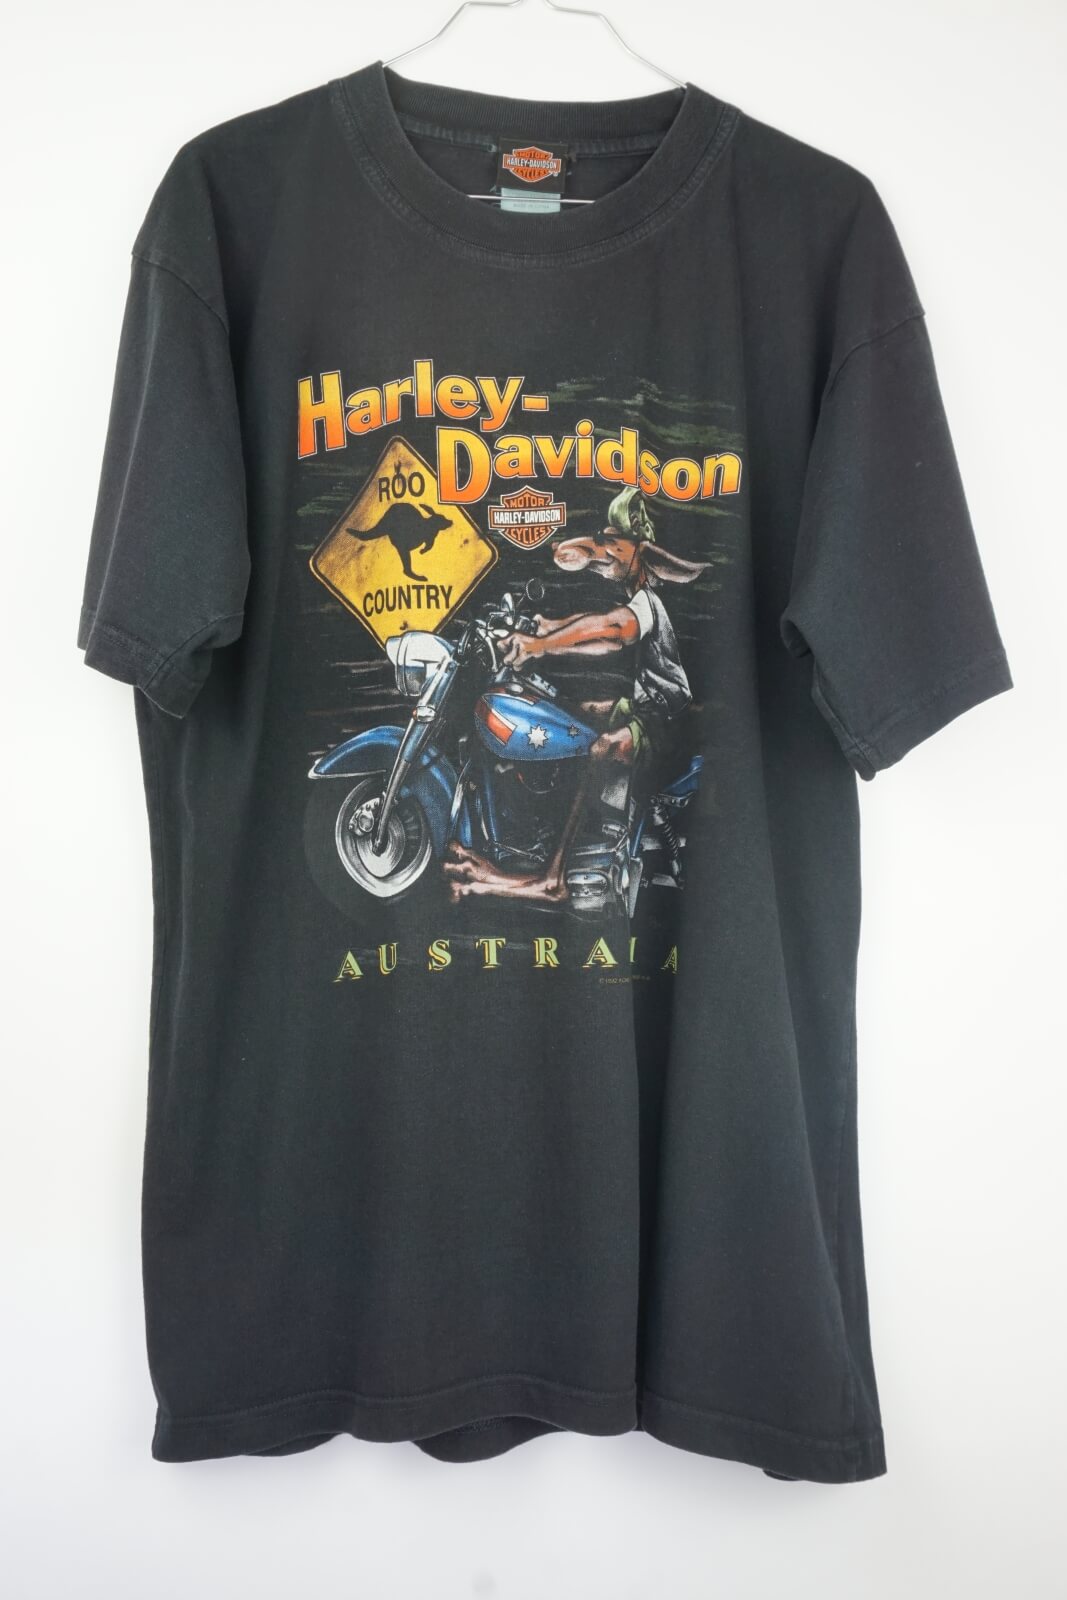 bue Nord Gentleman 2001 Harley Davidson Australia Biker Dingo Geelong T-Shirt - Papa Vintage -  Dein Onlineshop für ausgewählte und authentische Vintage Shirts der 80er,  90er und 2000er Jahre